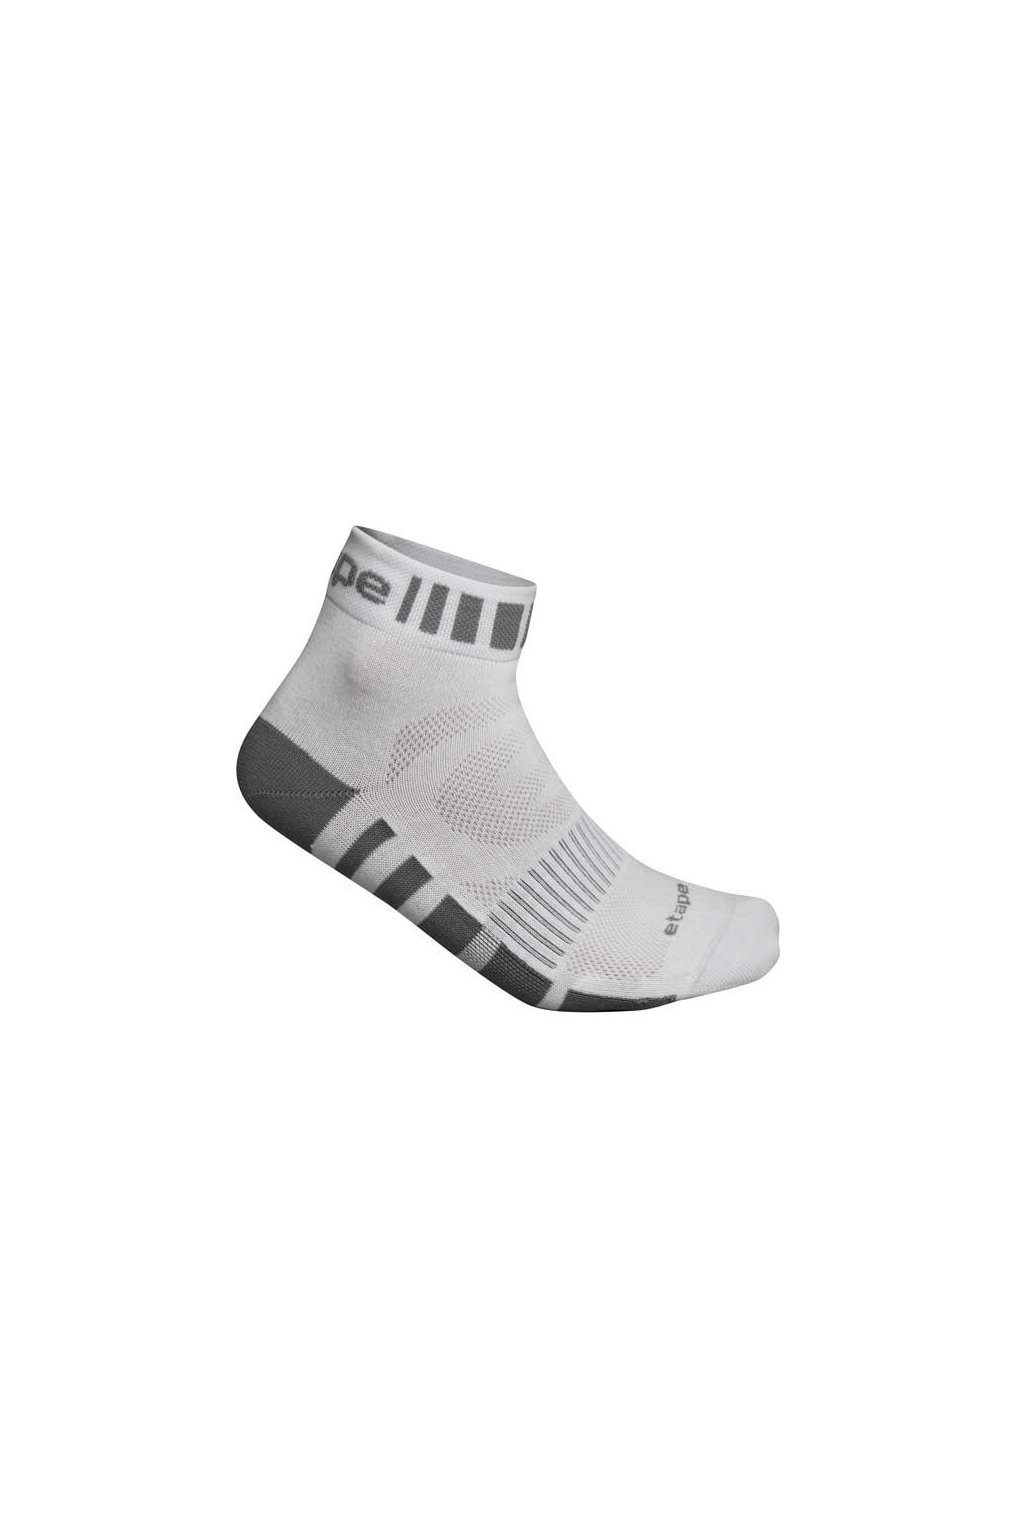 Etape - ponožky FEET, bílá/šedá